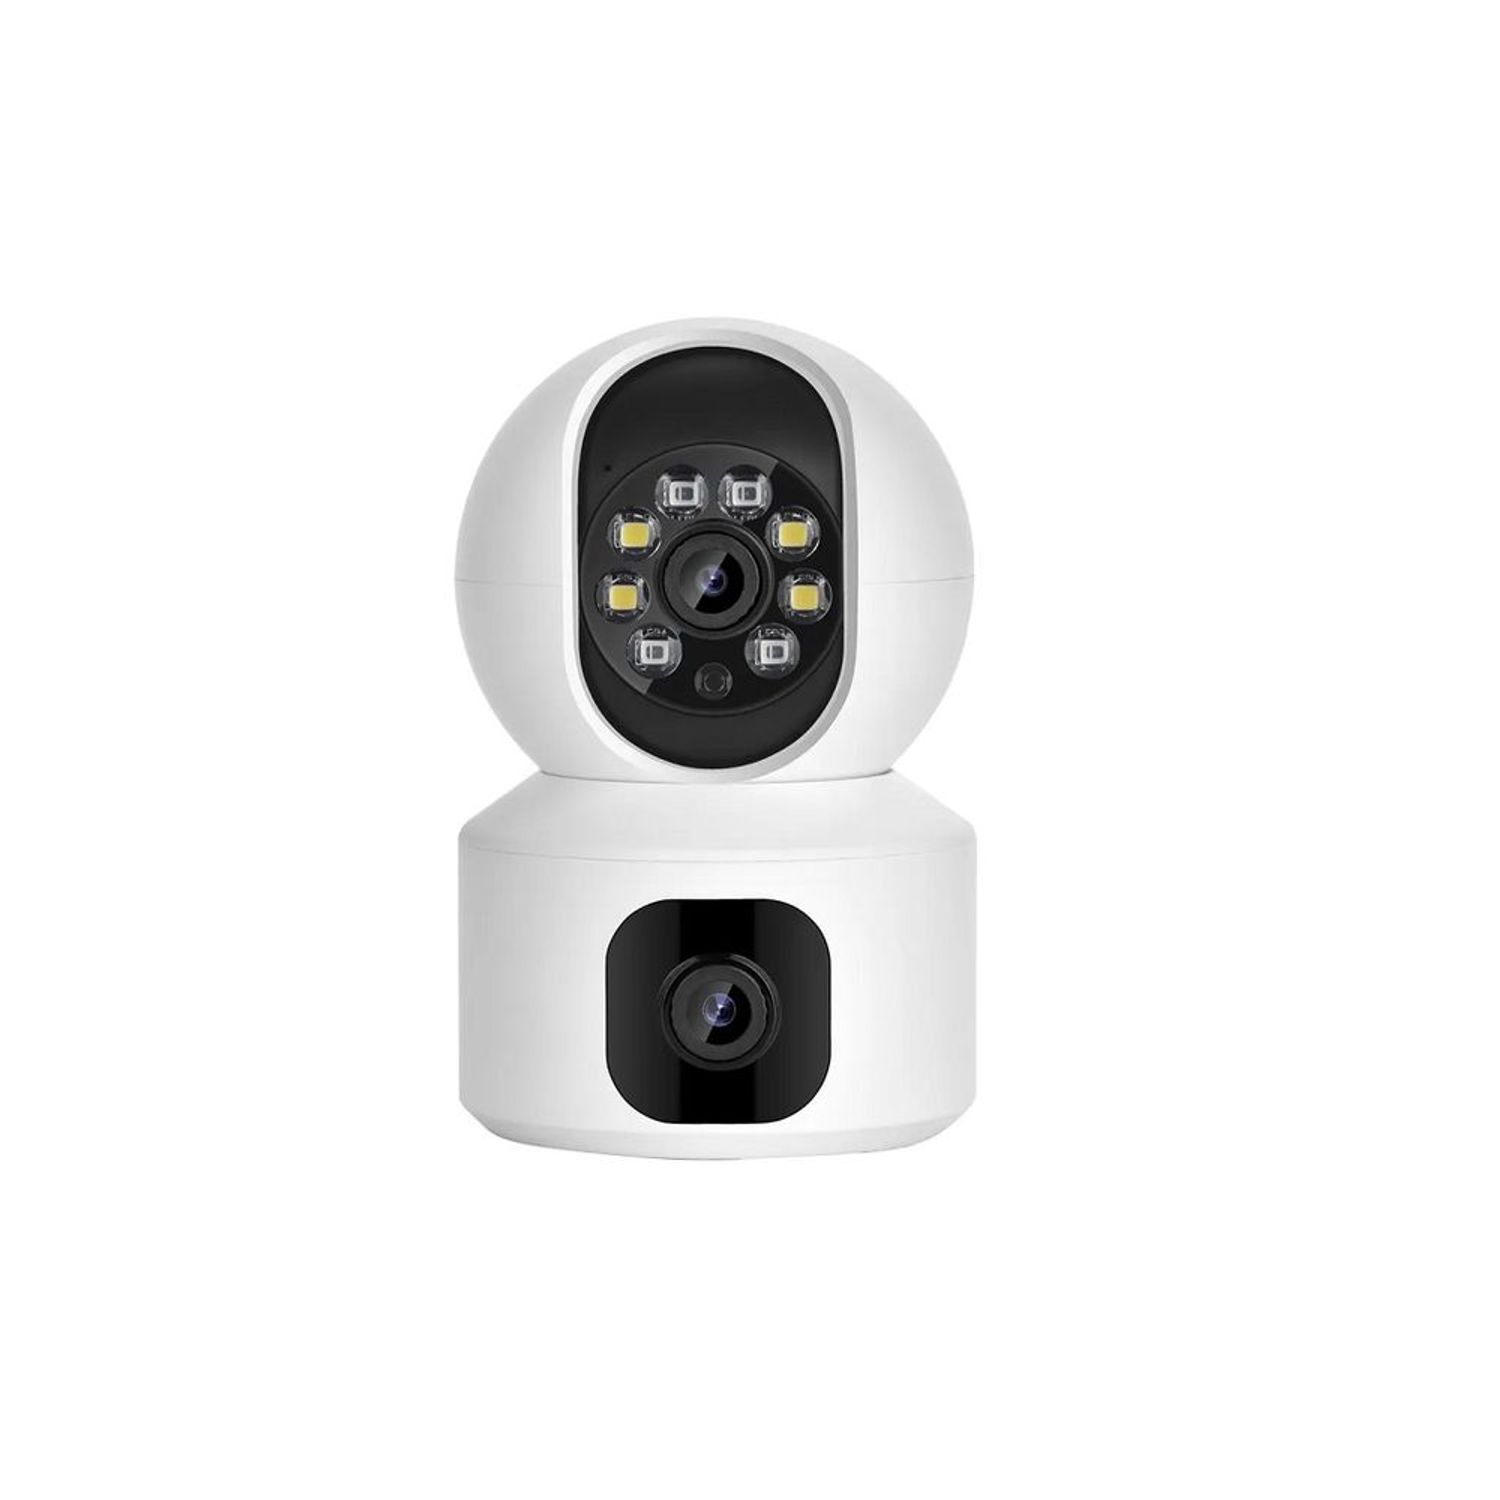 Controla todo lo que pasa en la puerta de casa con esta cámara de vigilancia  WiFi, que tiene grabación 2K y un preciazo